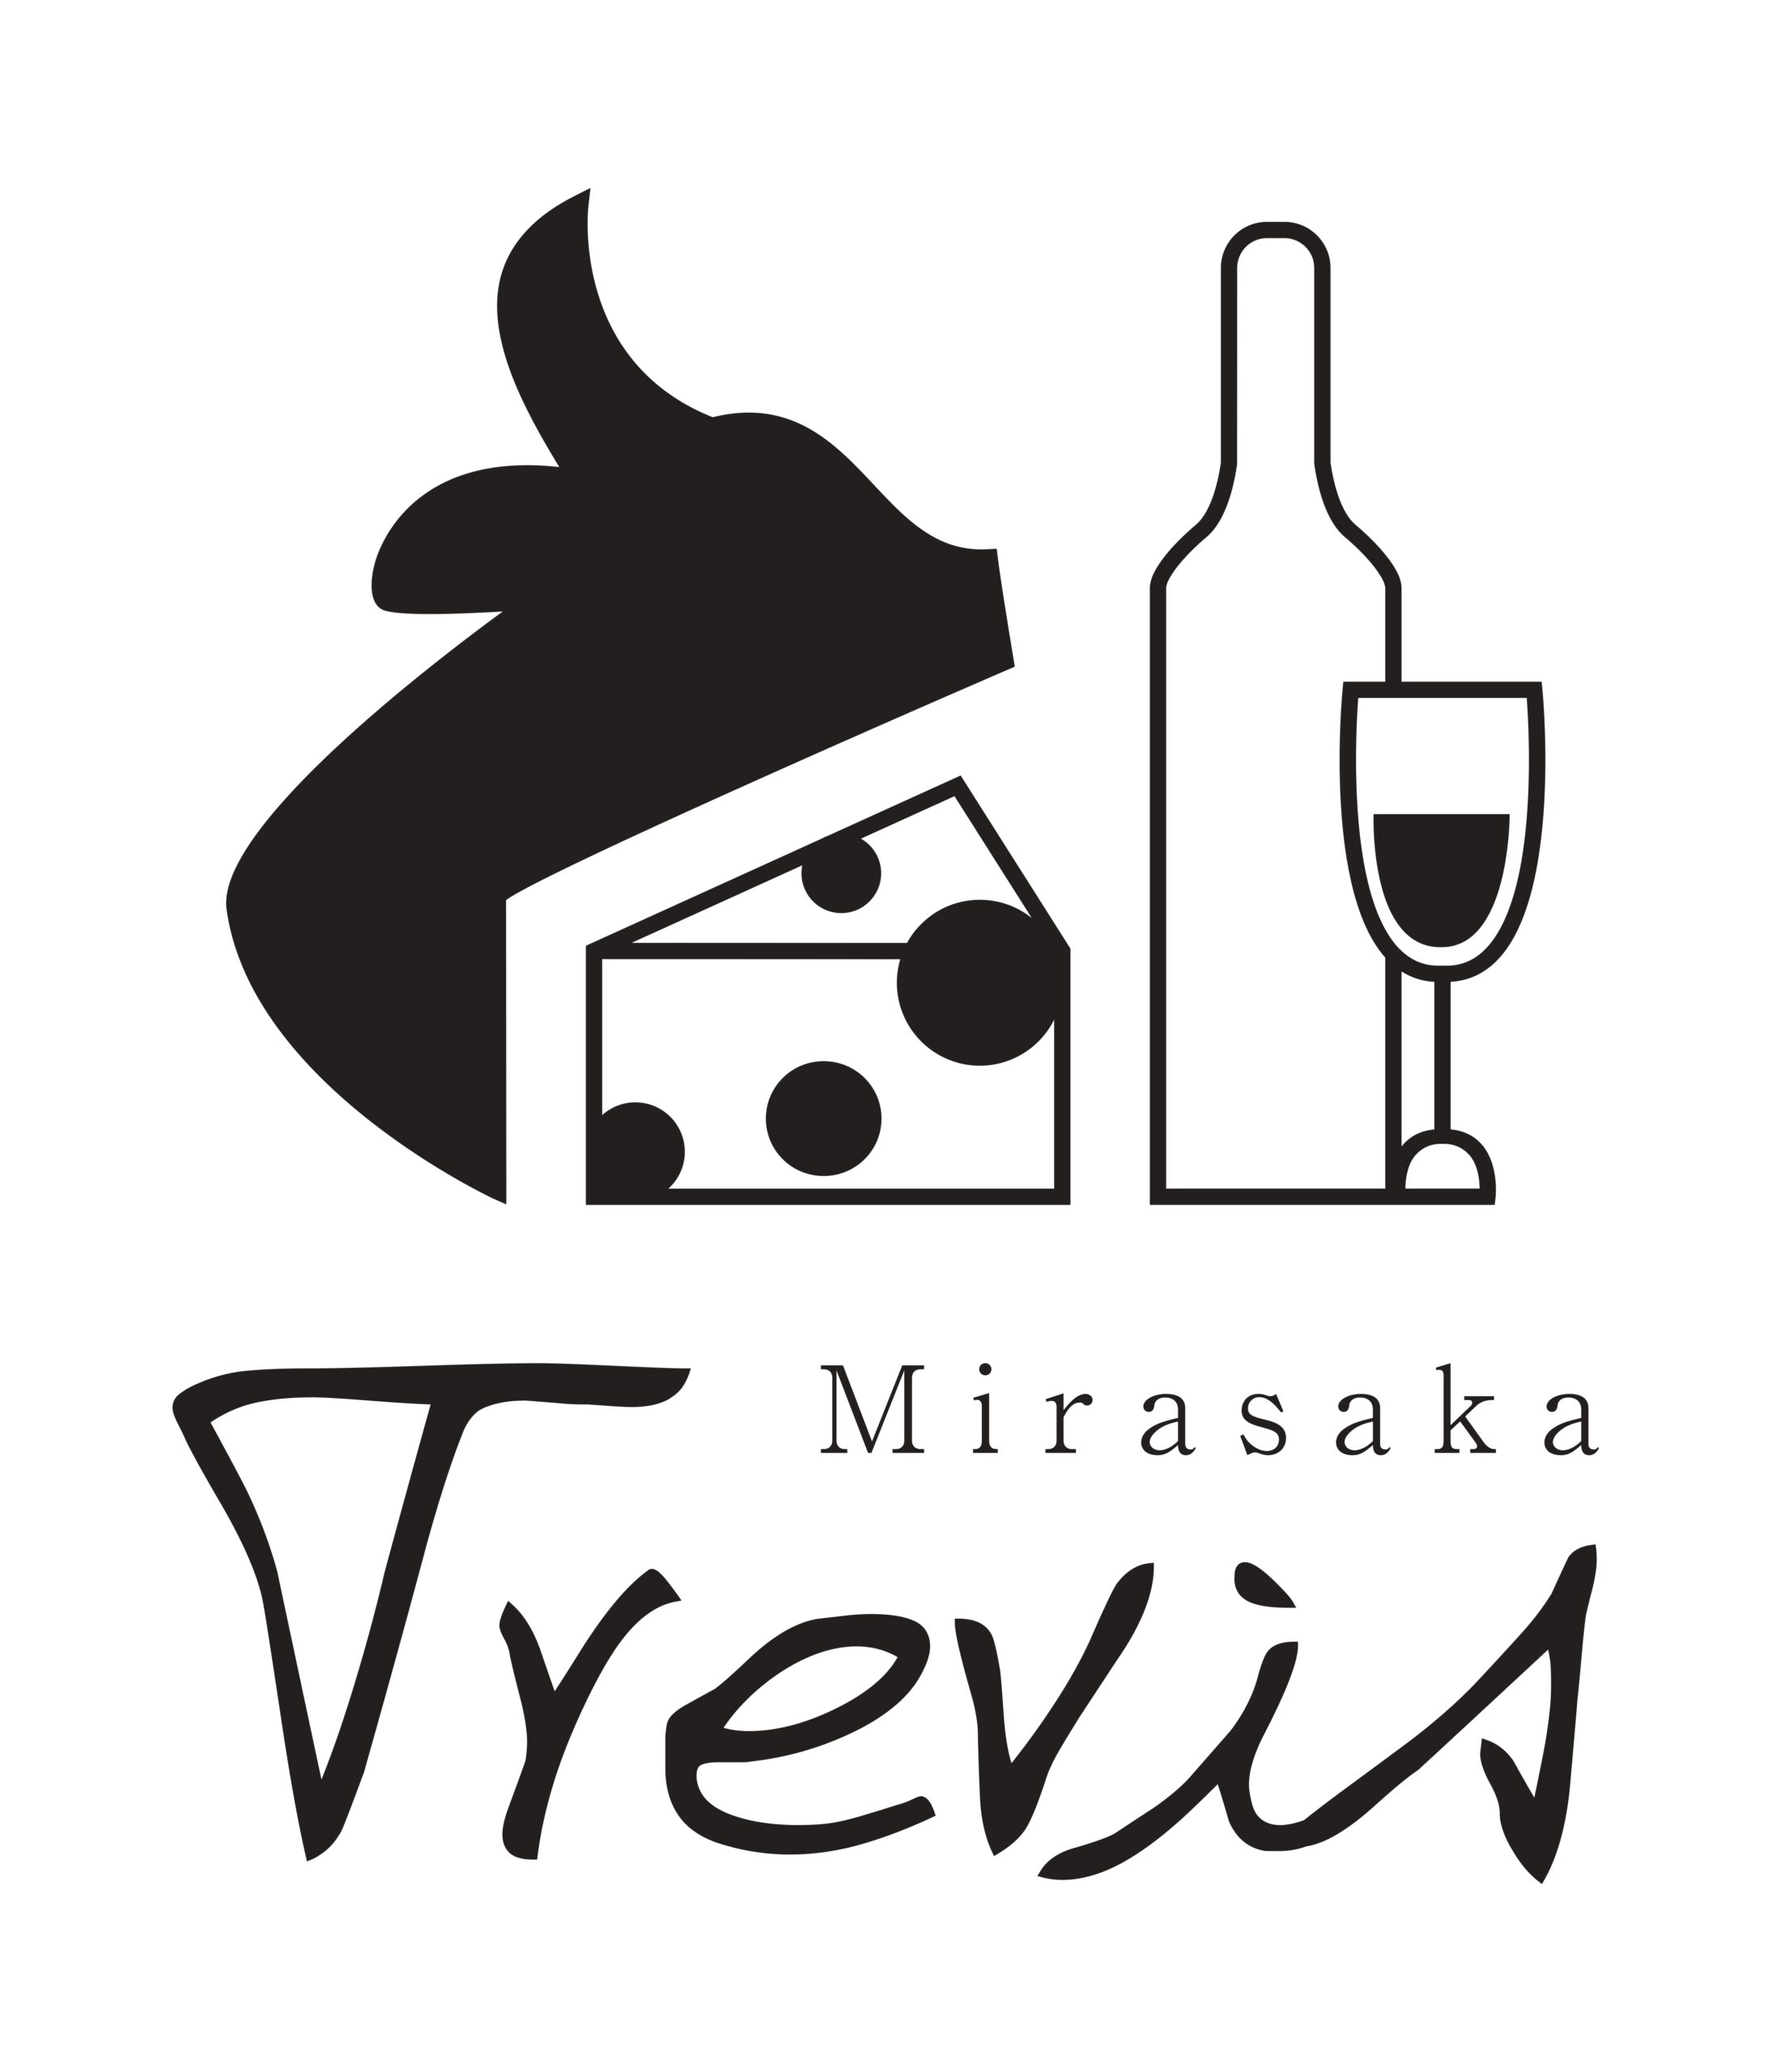 Mirasaka Trevis